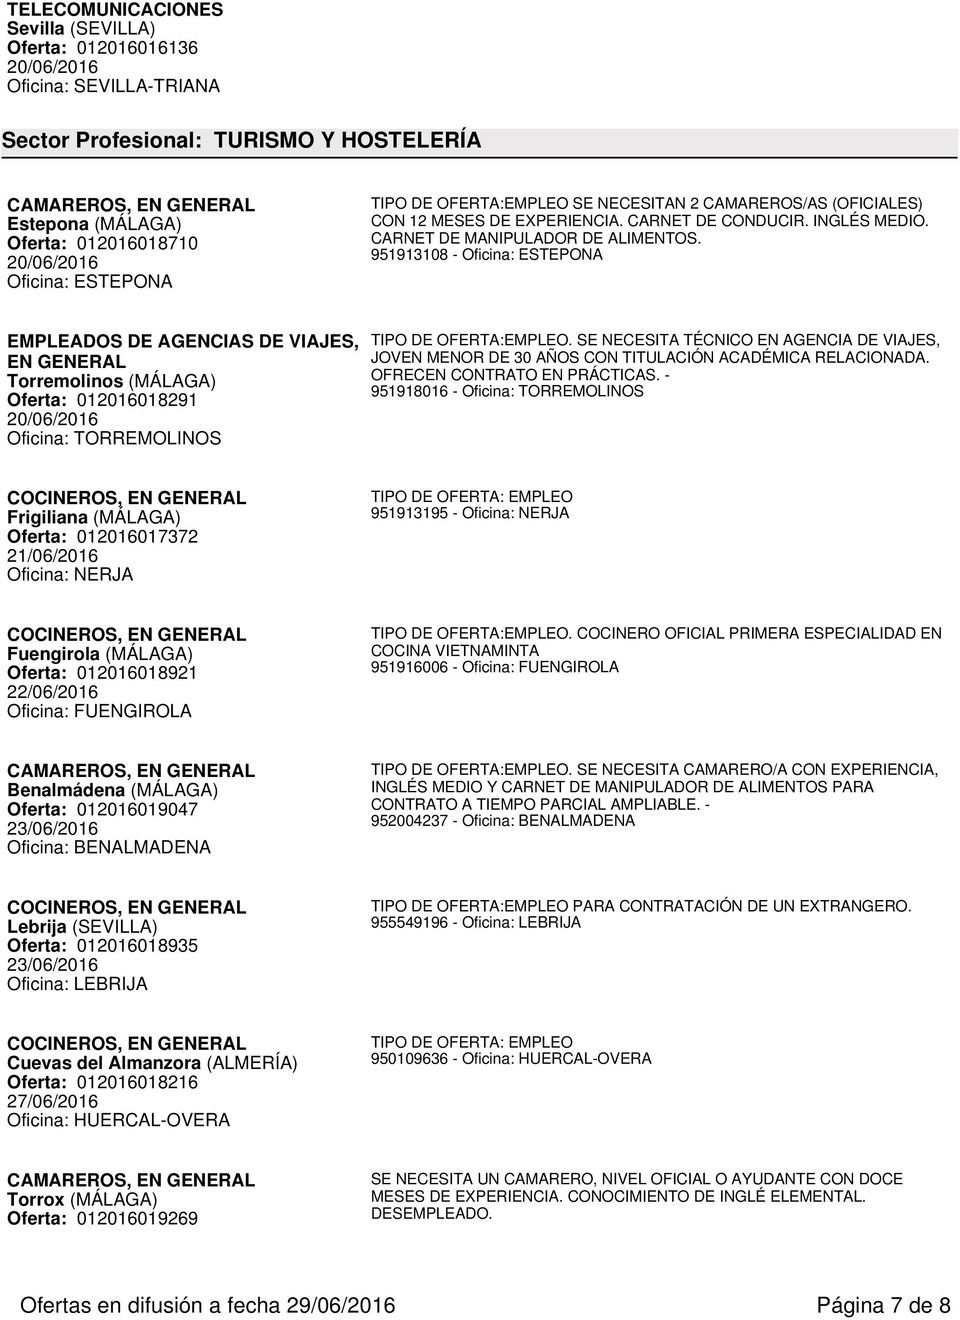 951913108 - Oficina: ESTEPONA EMPLEADOS DE AGENCIAS DE VIAJES, EN GENERAL Torremolinos (MÁLAGA) Oferta: 012016018291 Oficina: TORREMOLINOS.